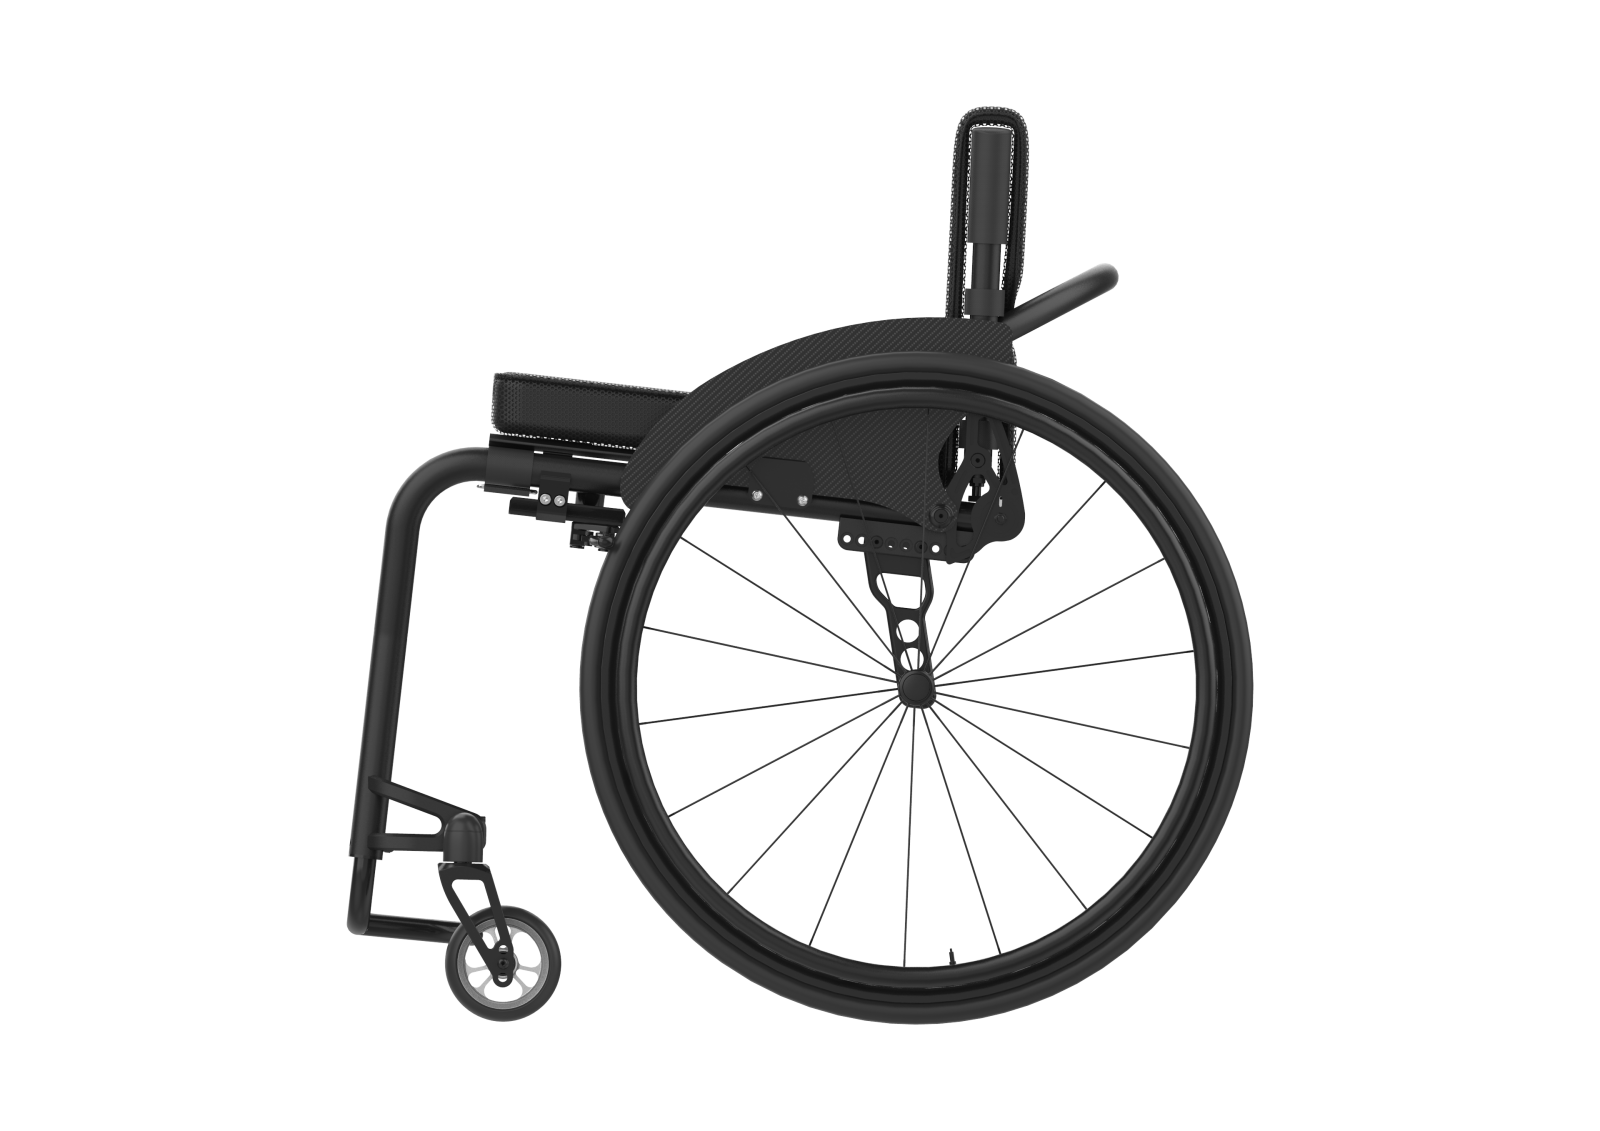 Wózek inwalidzki ICON 60